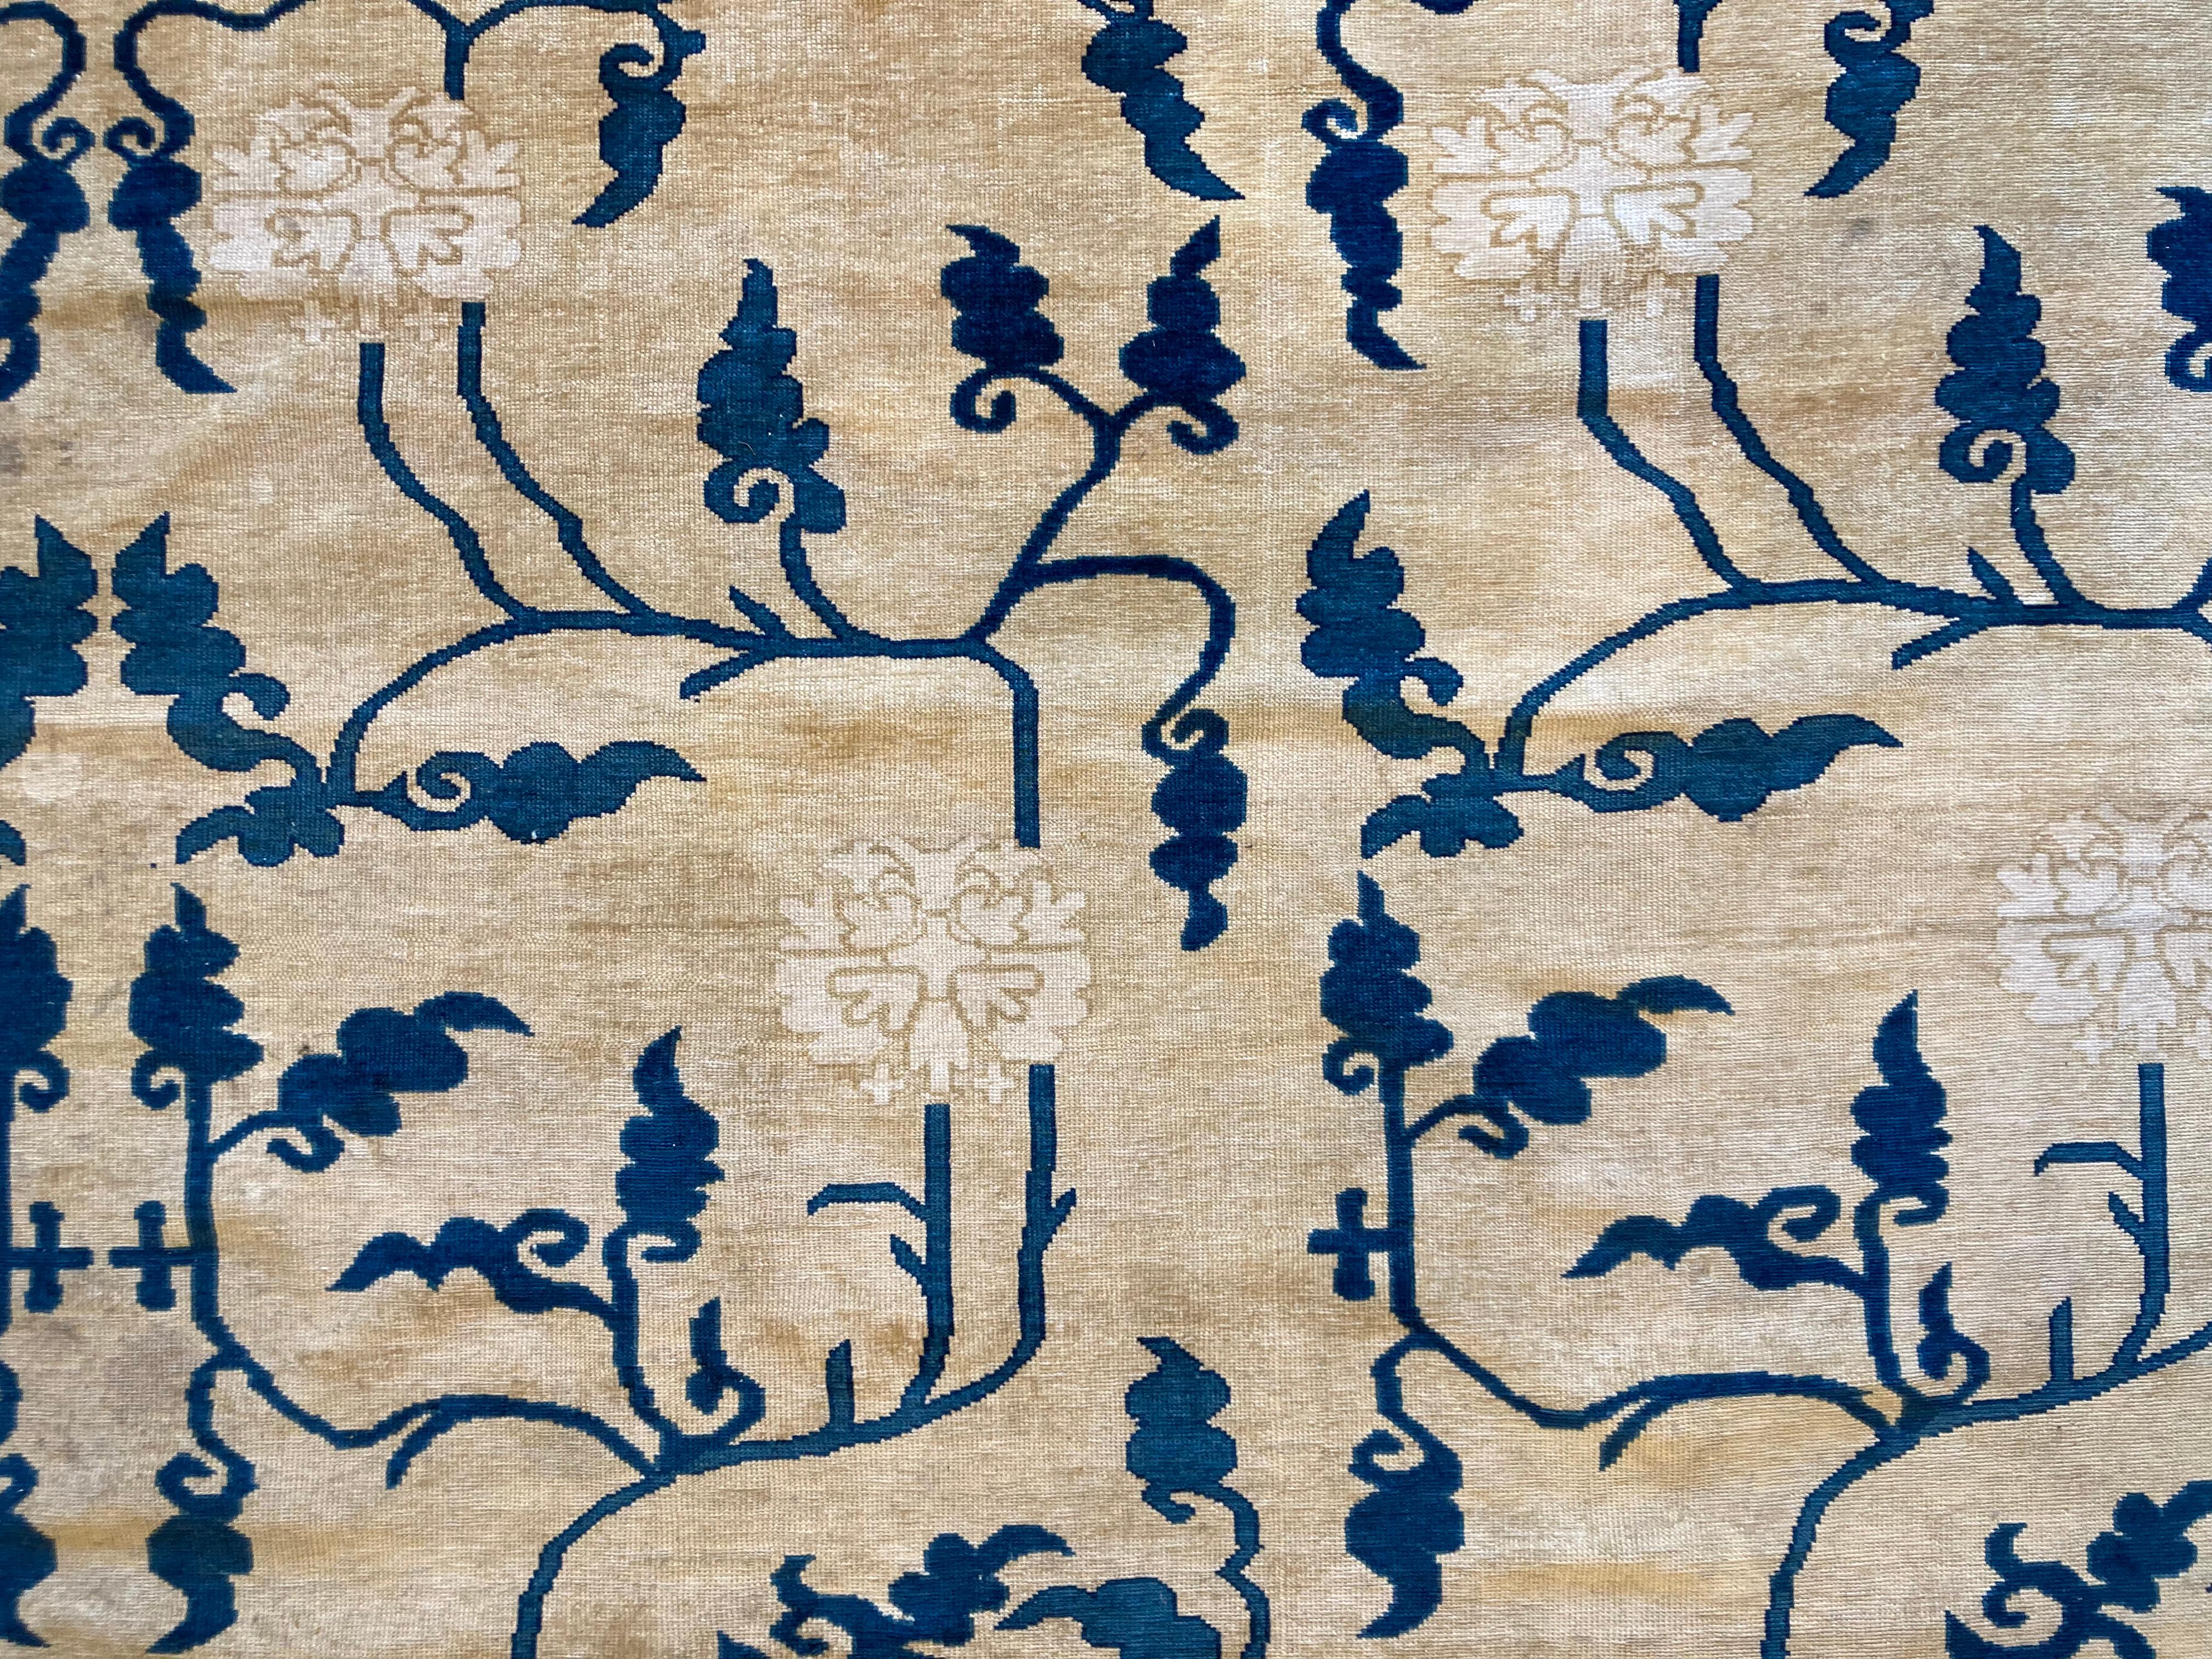 Alfombra china realizada en el siglo XX basada en los cartones de alfombras del XVIII con la misma técnica.
Seine Dekoration basiert auf einer Verkleidung aus Ponias, Rampen und Hörnern in verschiedenen Blautönen, die alle auf einem beigefarbenen